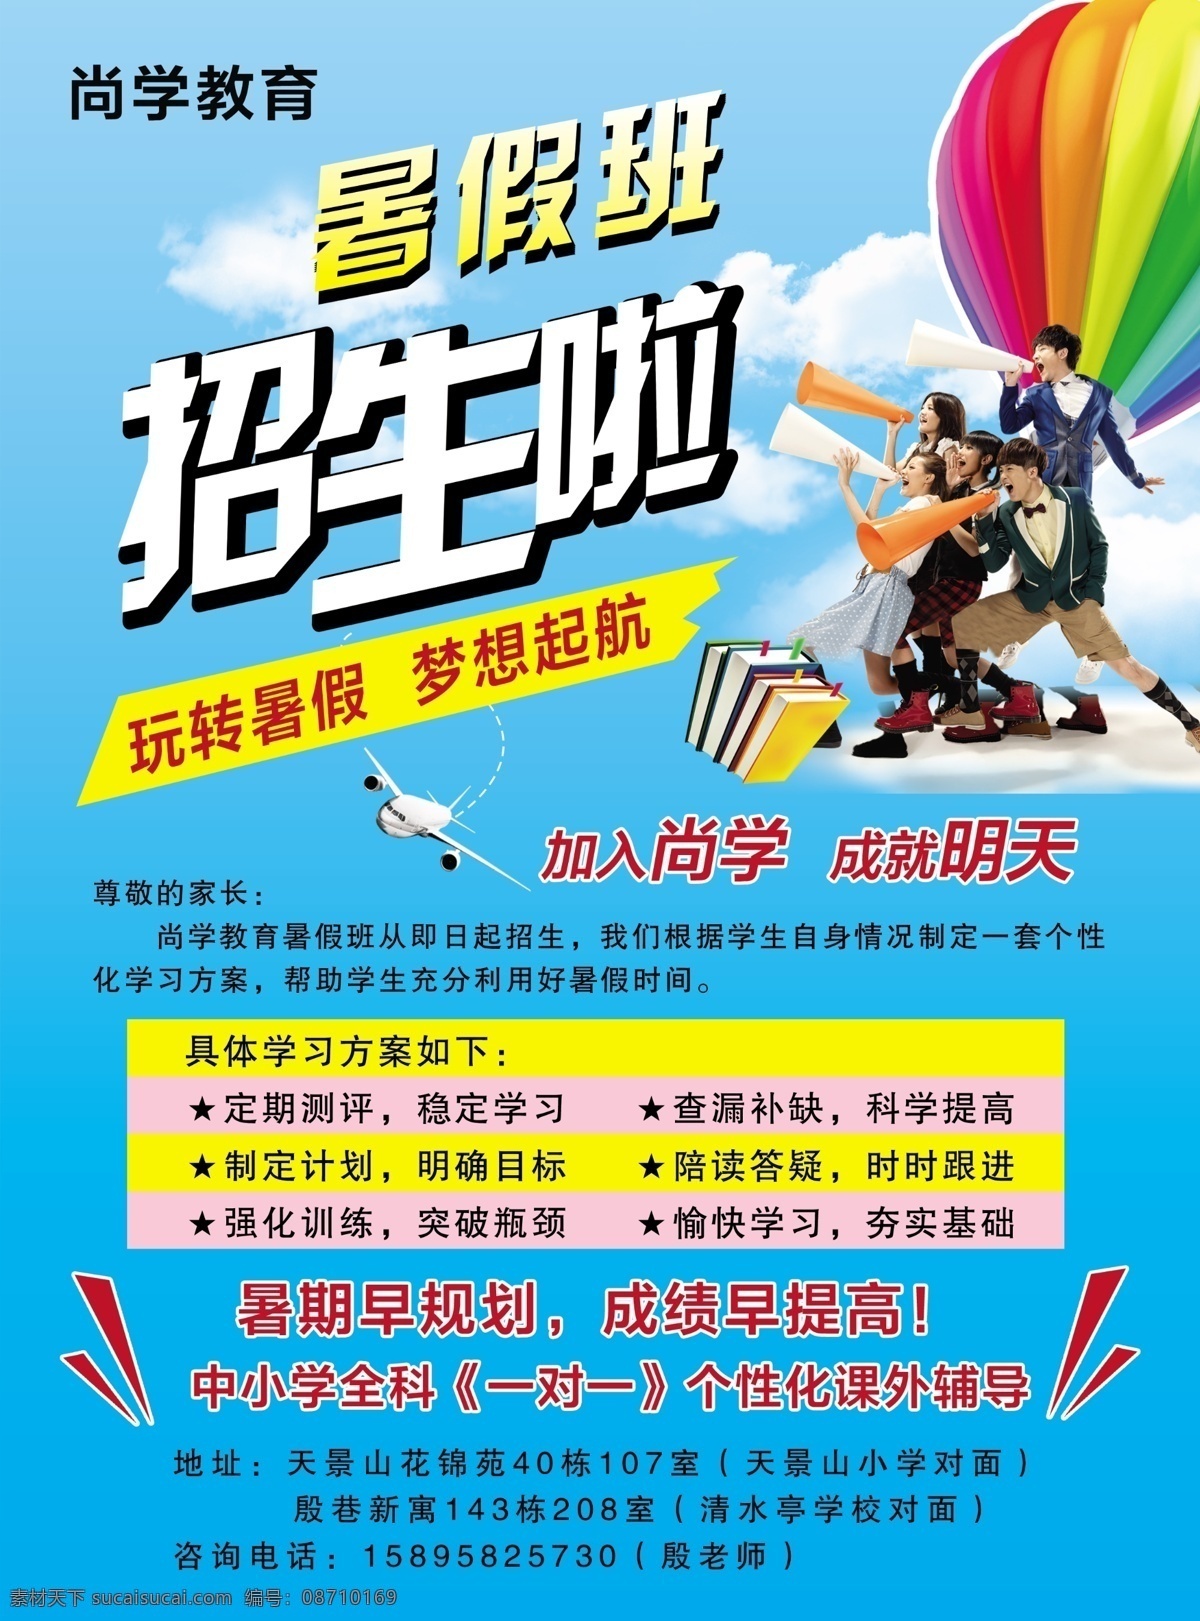 暑假招生 暑假 招生 热气球 书籍 飞机 起航 梦想 白云 蓝天 喇叭 学生 教育 分层